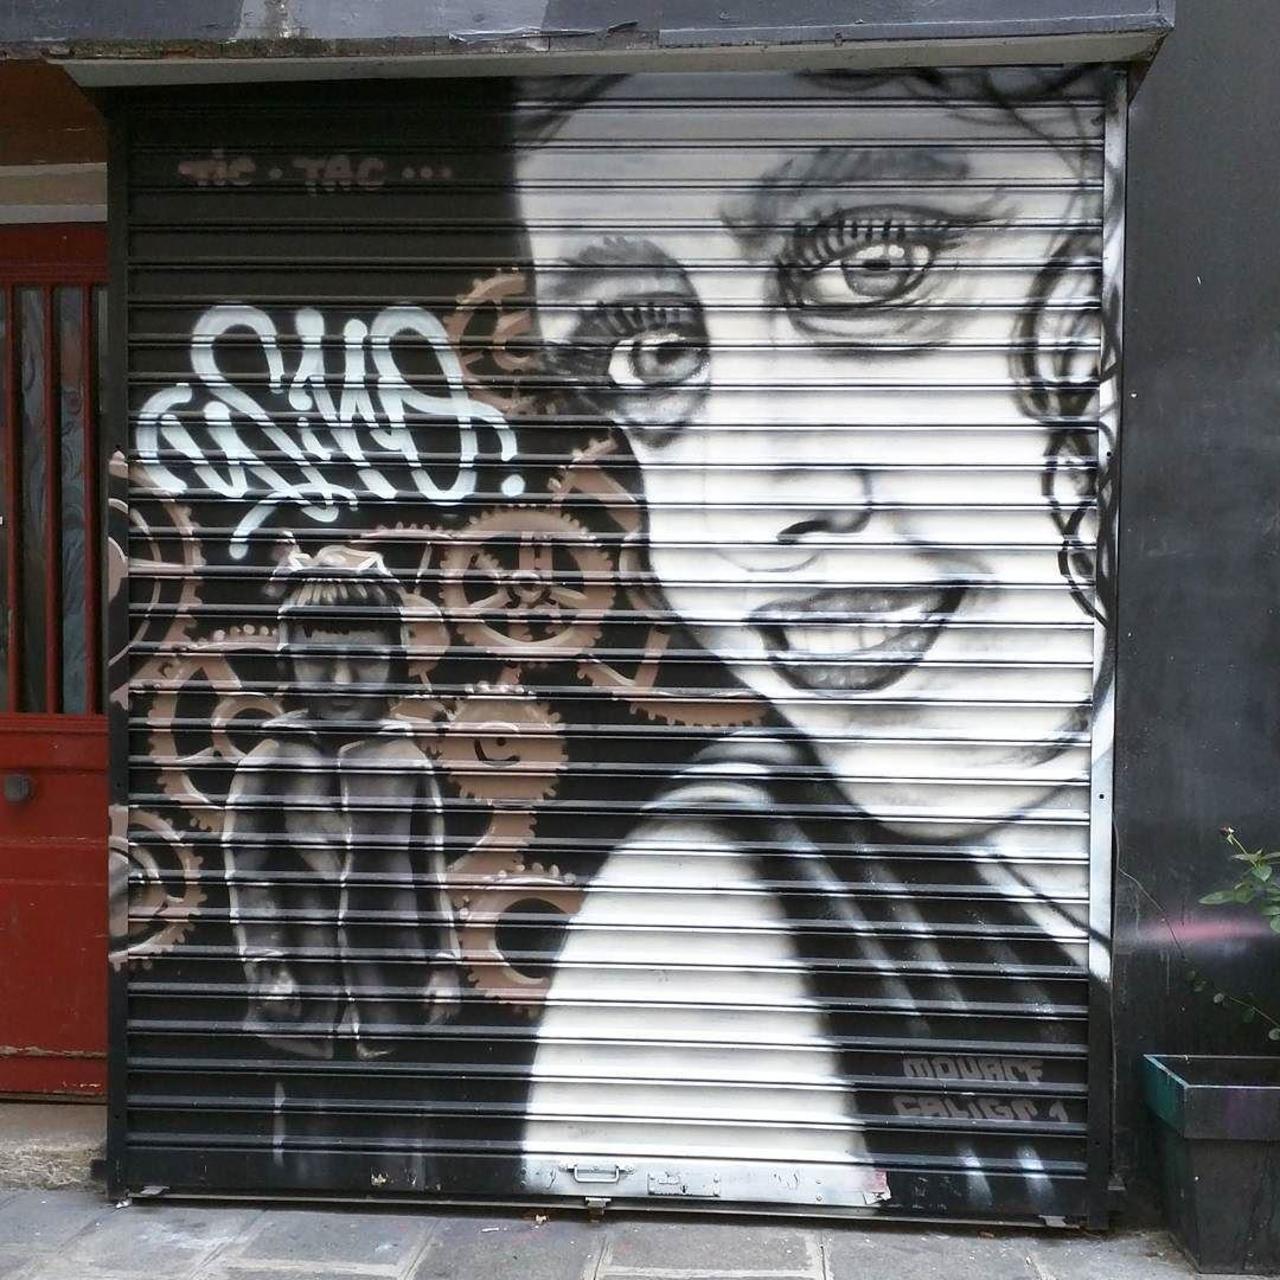 #Paris #graffiti photo by @alphaquadra http://ift.tt/1MyjUd7 #StreetArt http://t.co/zncKgRsiez